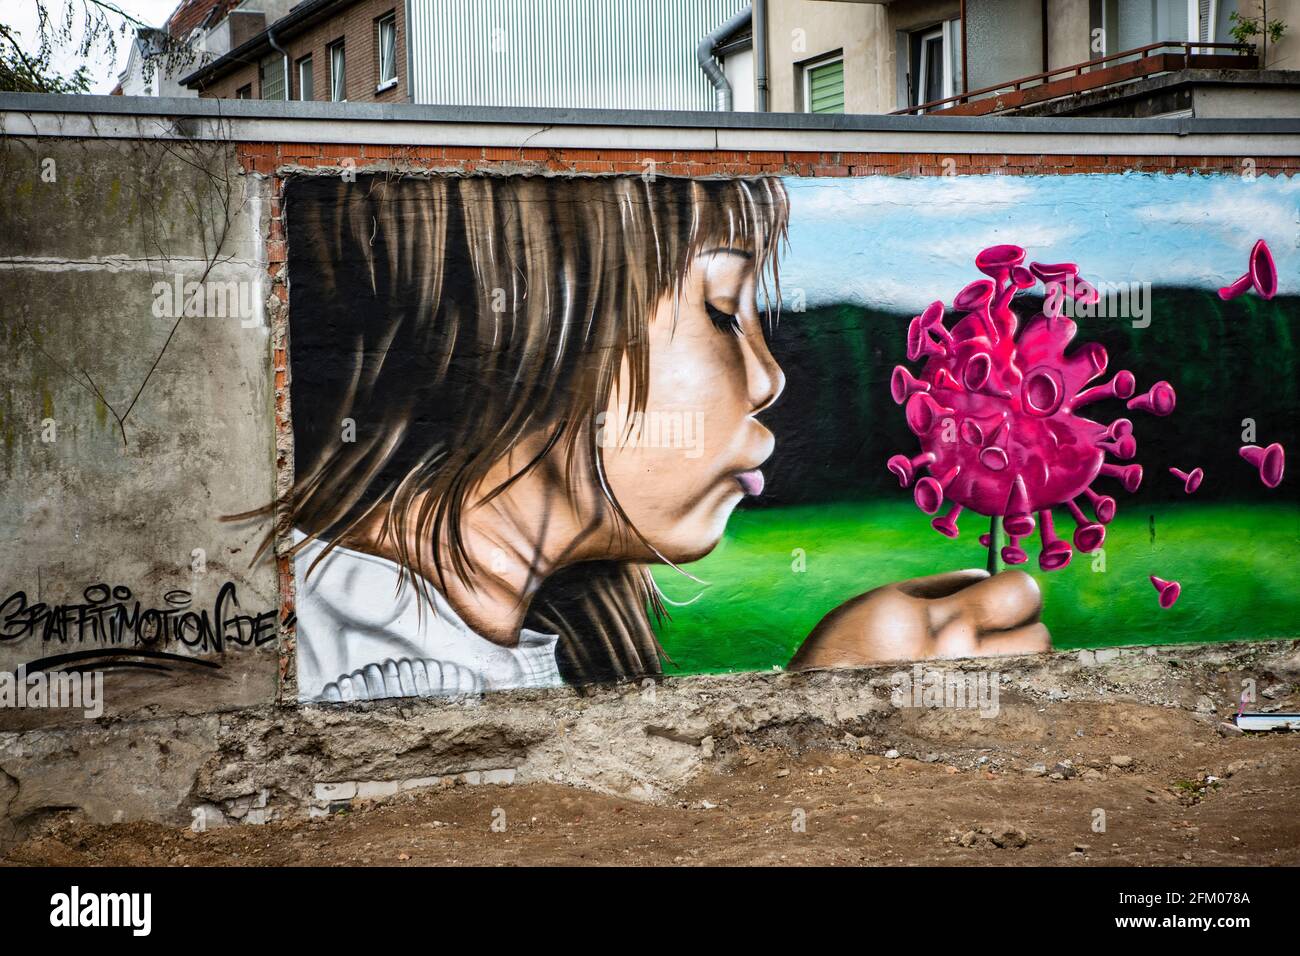 Ein Graffiti an einer alten Mauer zeigt ein Mädchen, welches wie bei einer Pusteblume ein Coronavirus anpustet, welches dann auseinander fliegt. Ein s Foto Stock